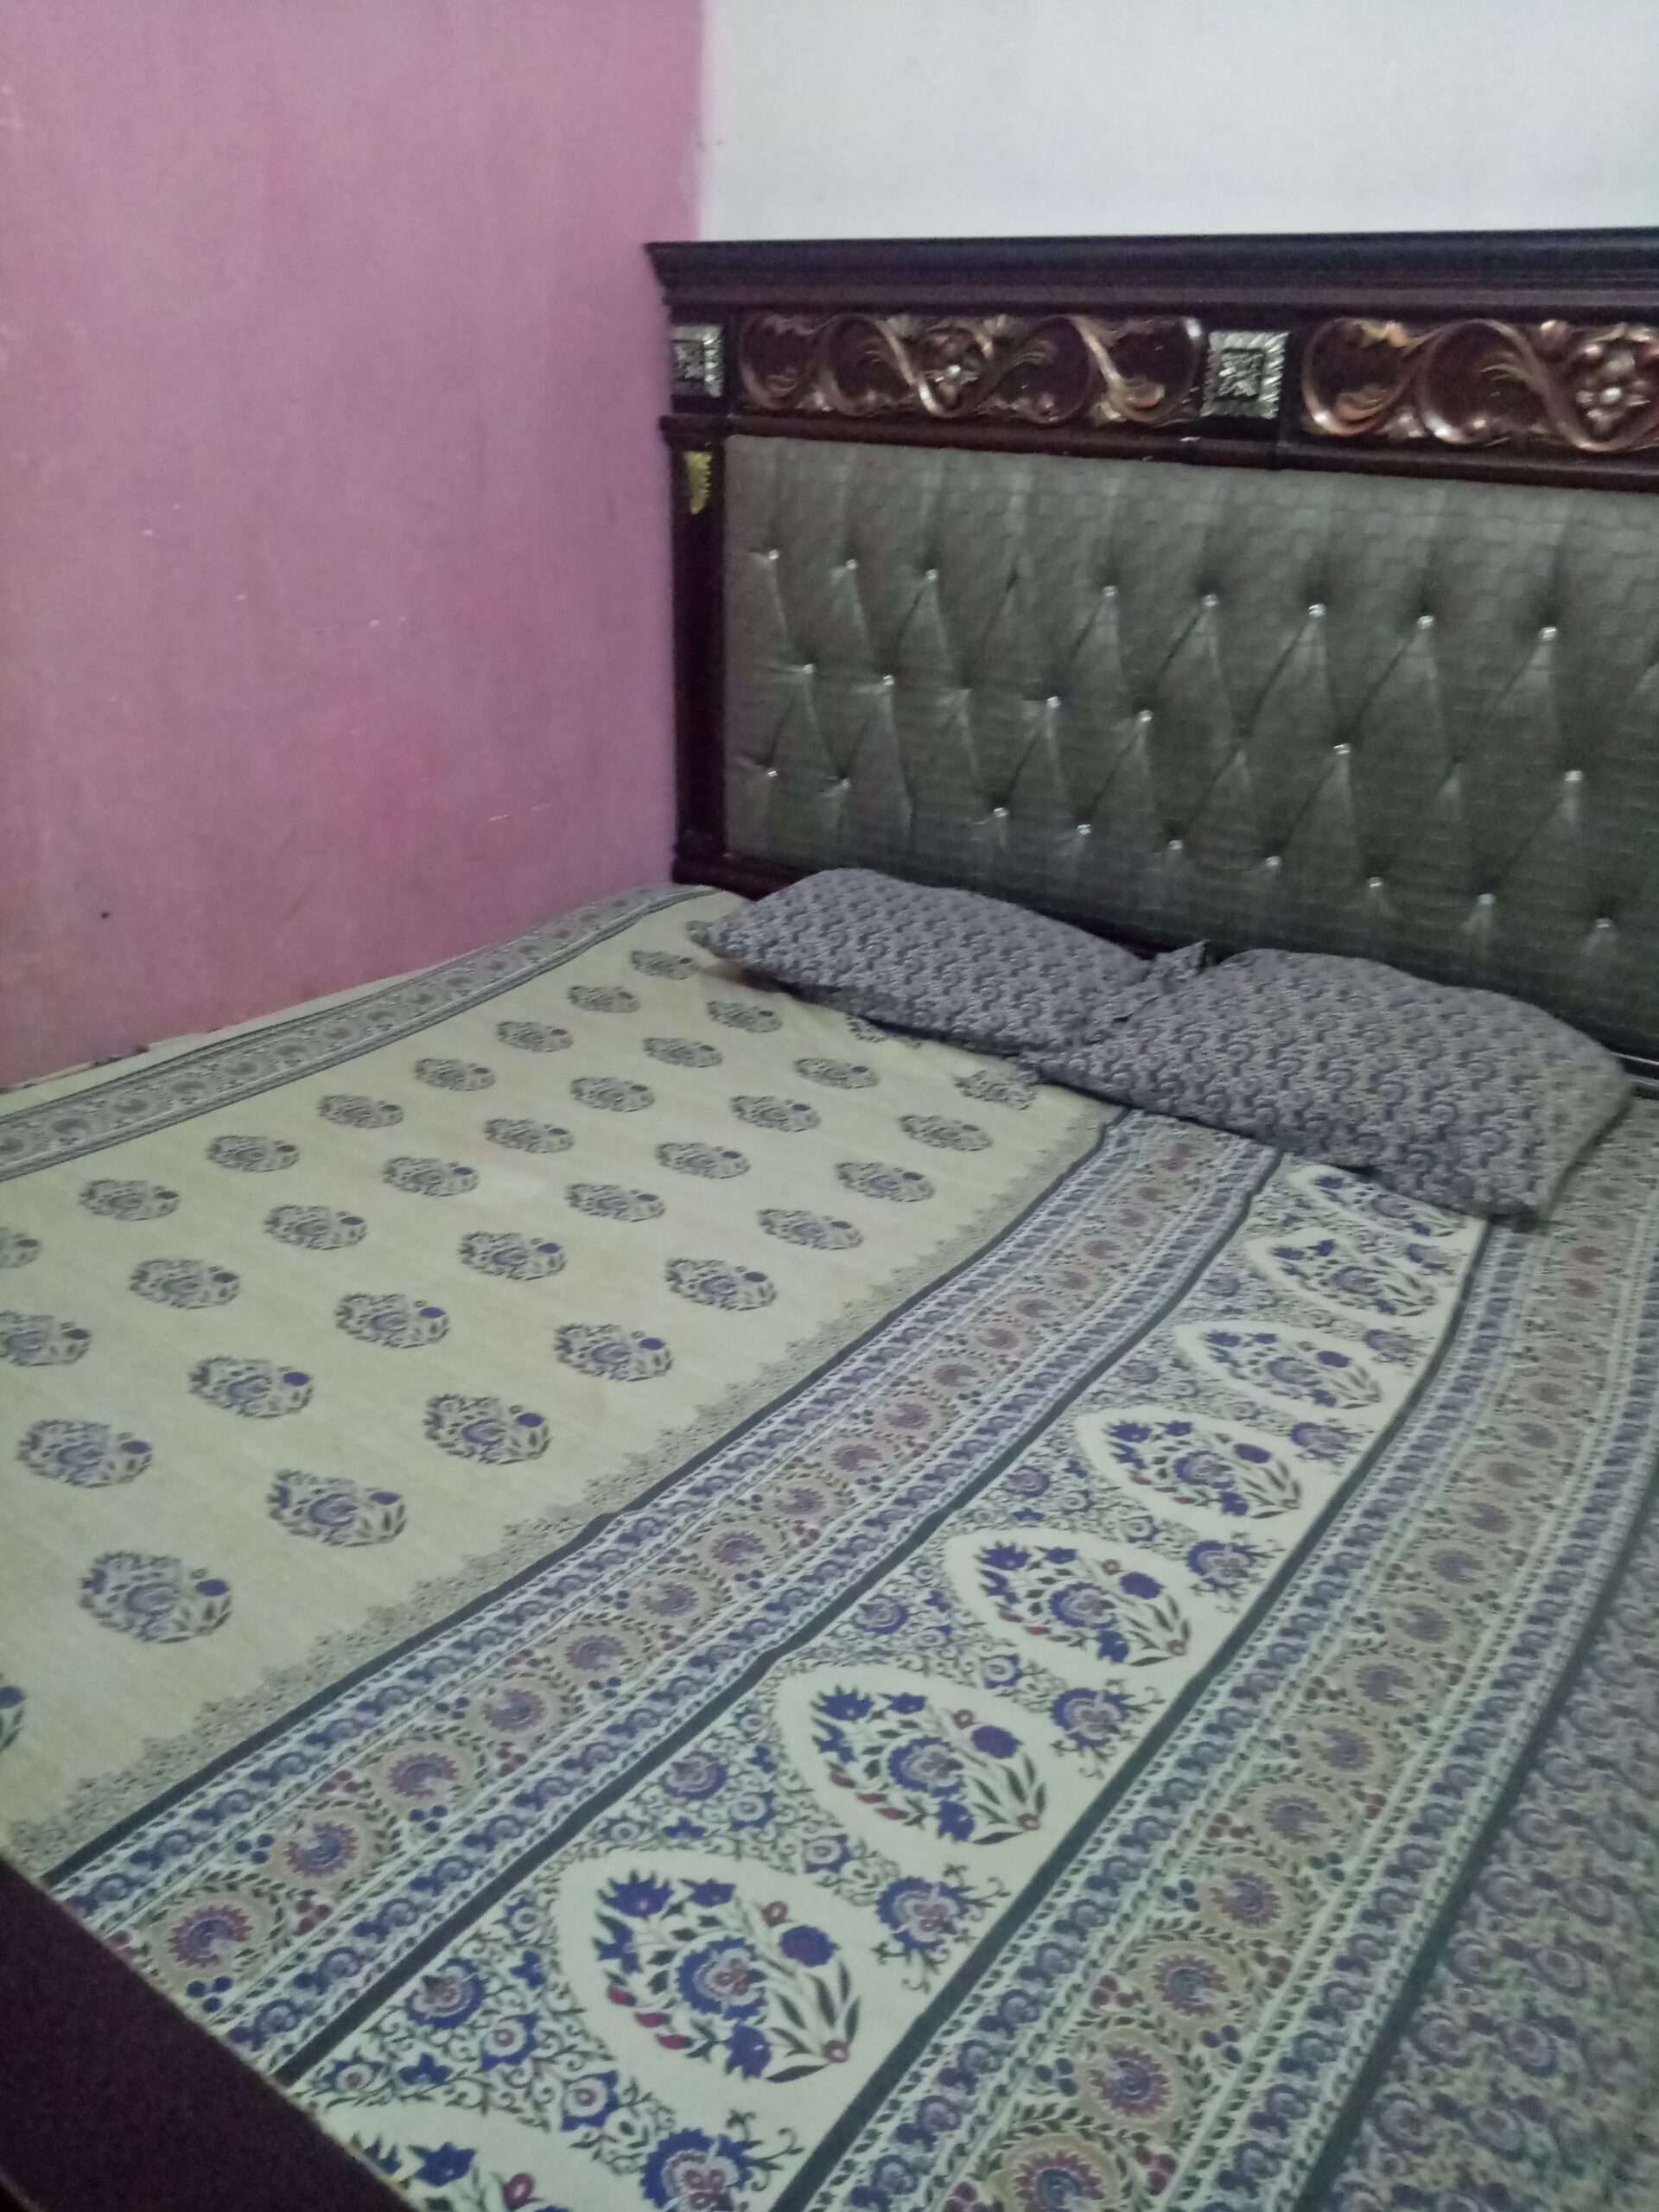 bedroom set for sale